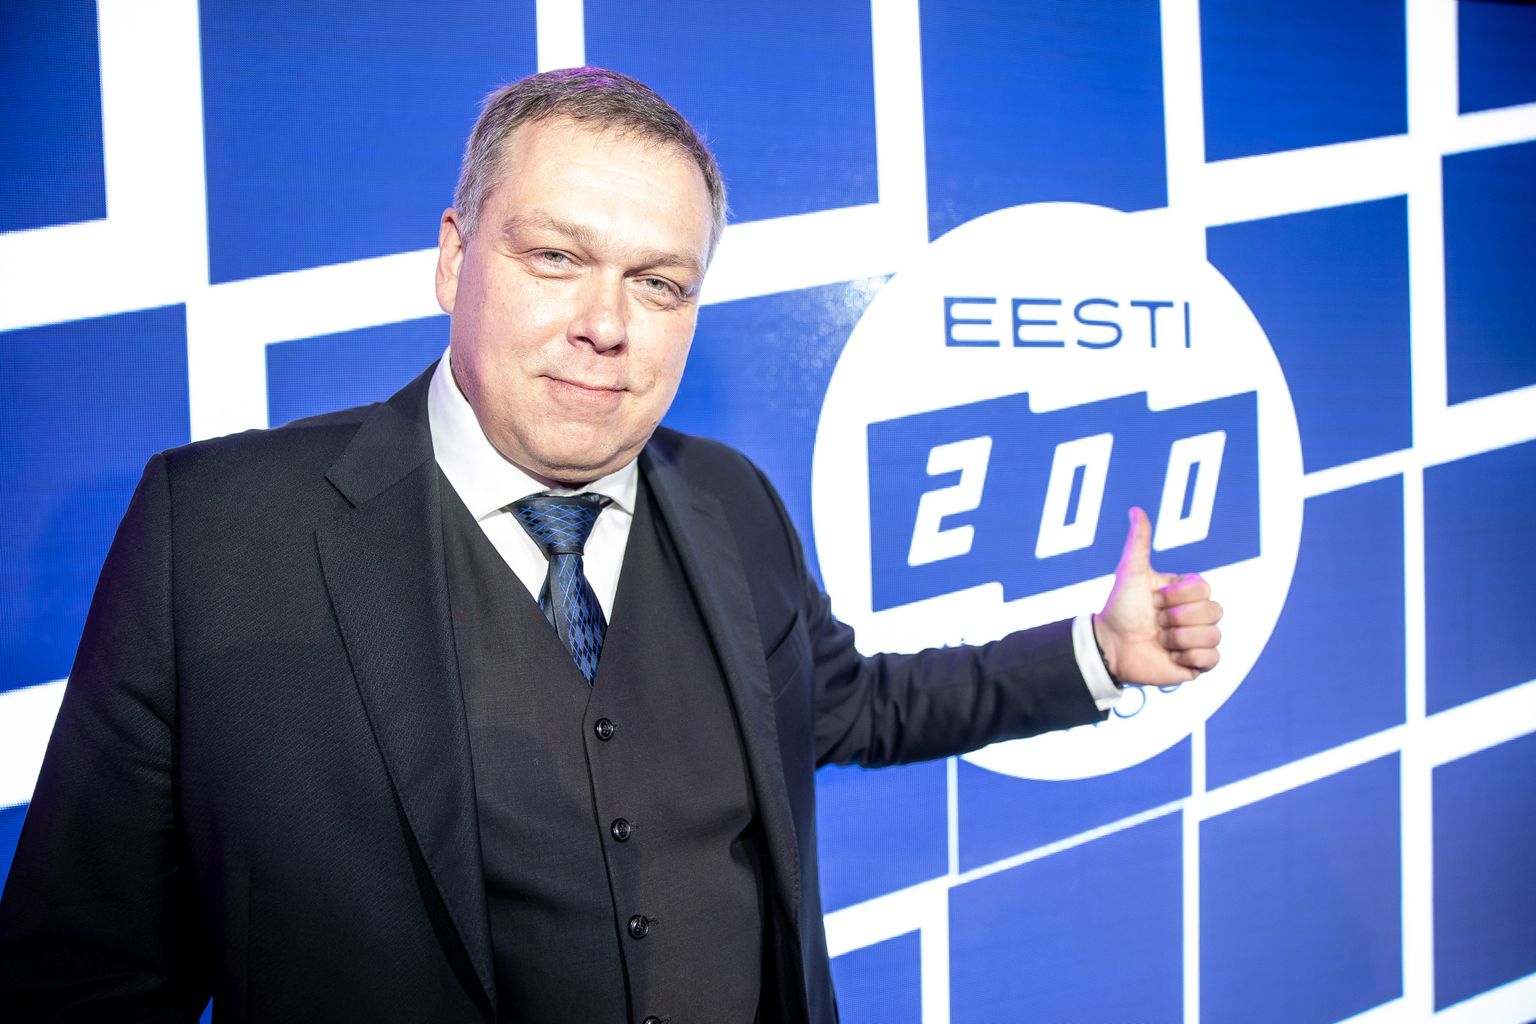 Eesti 200 esimees Lauri Hussar.